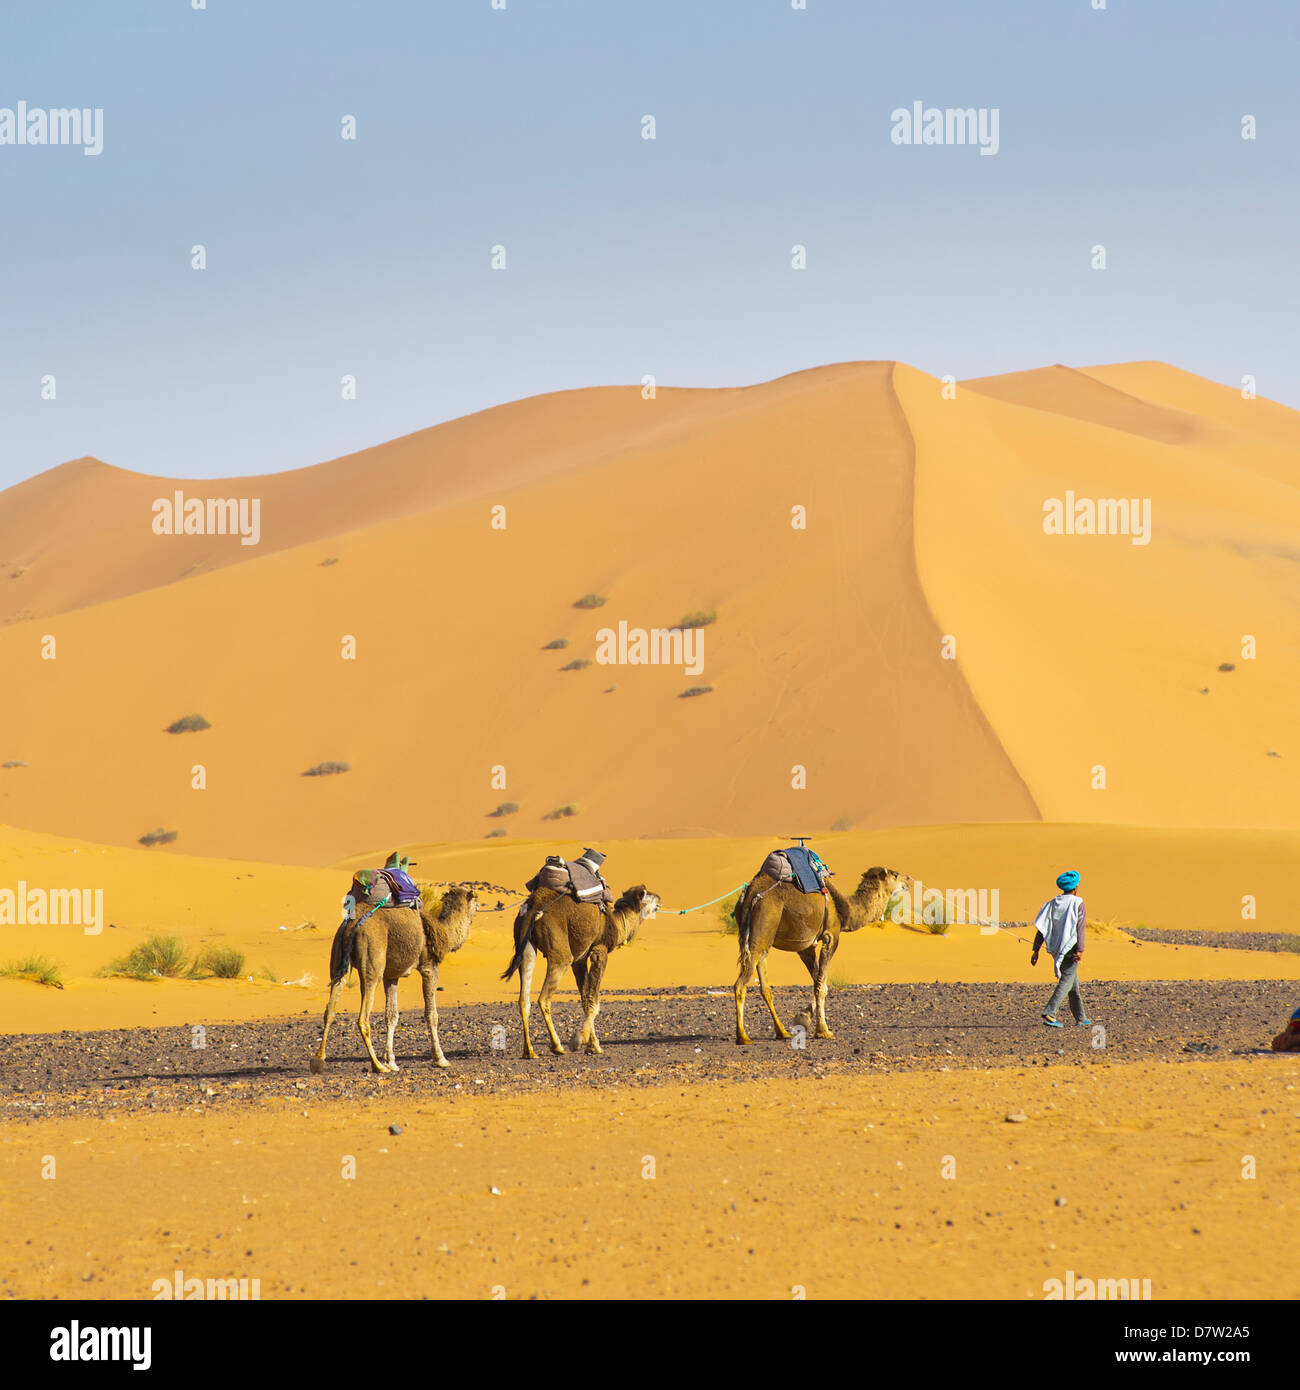 Caravane de chameaux dans le désert de l'Erg Chebbi, désert du Sahara, près de Merzouga, Maroc, Afrique du Nord Banque D'Images